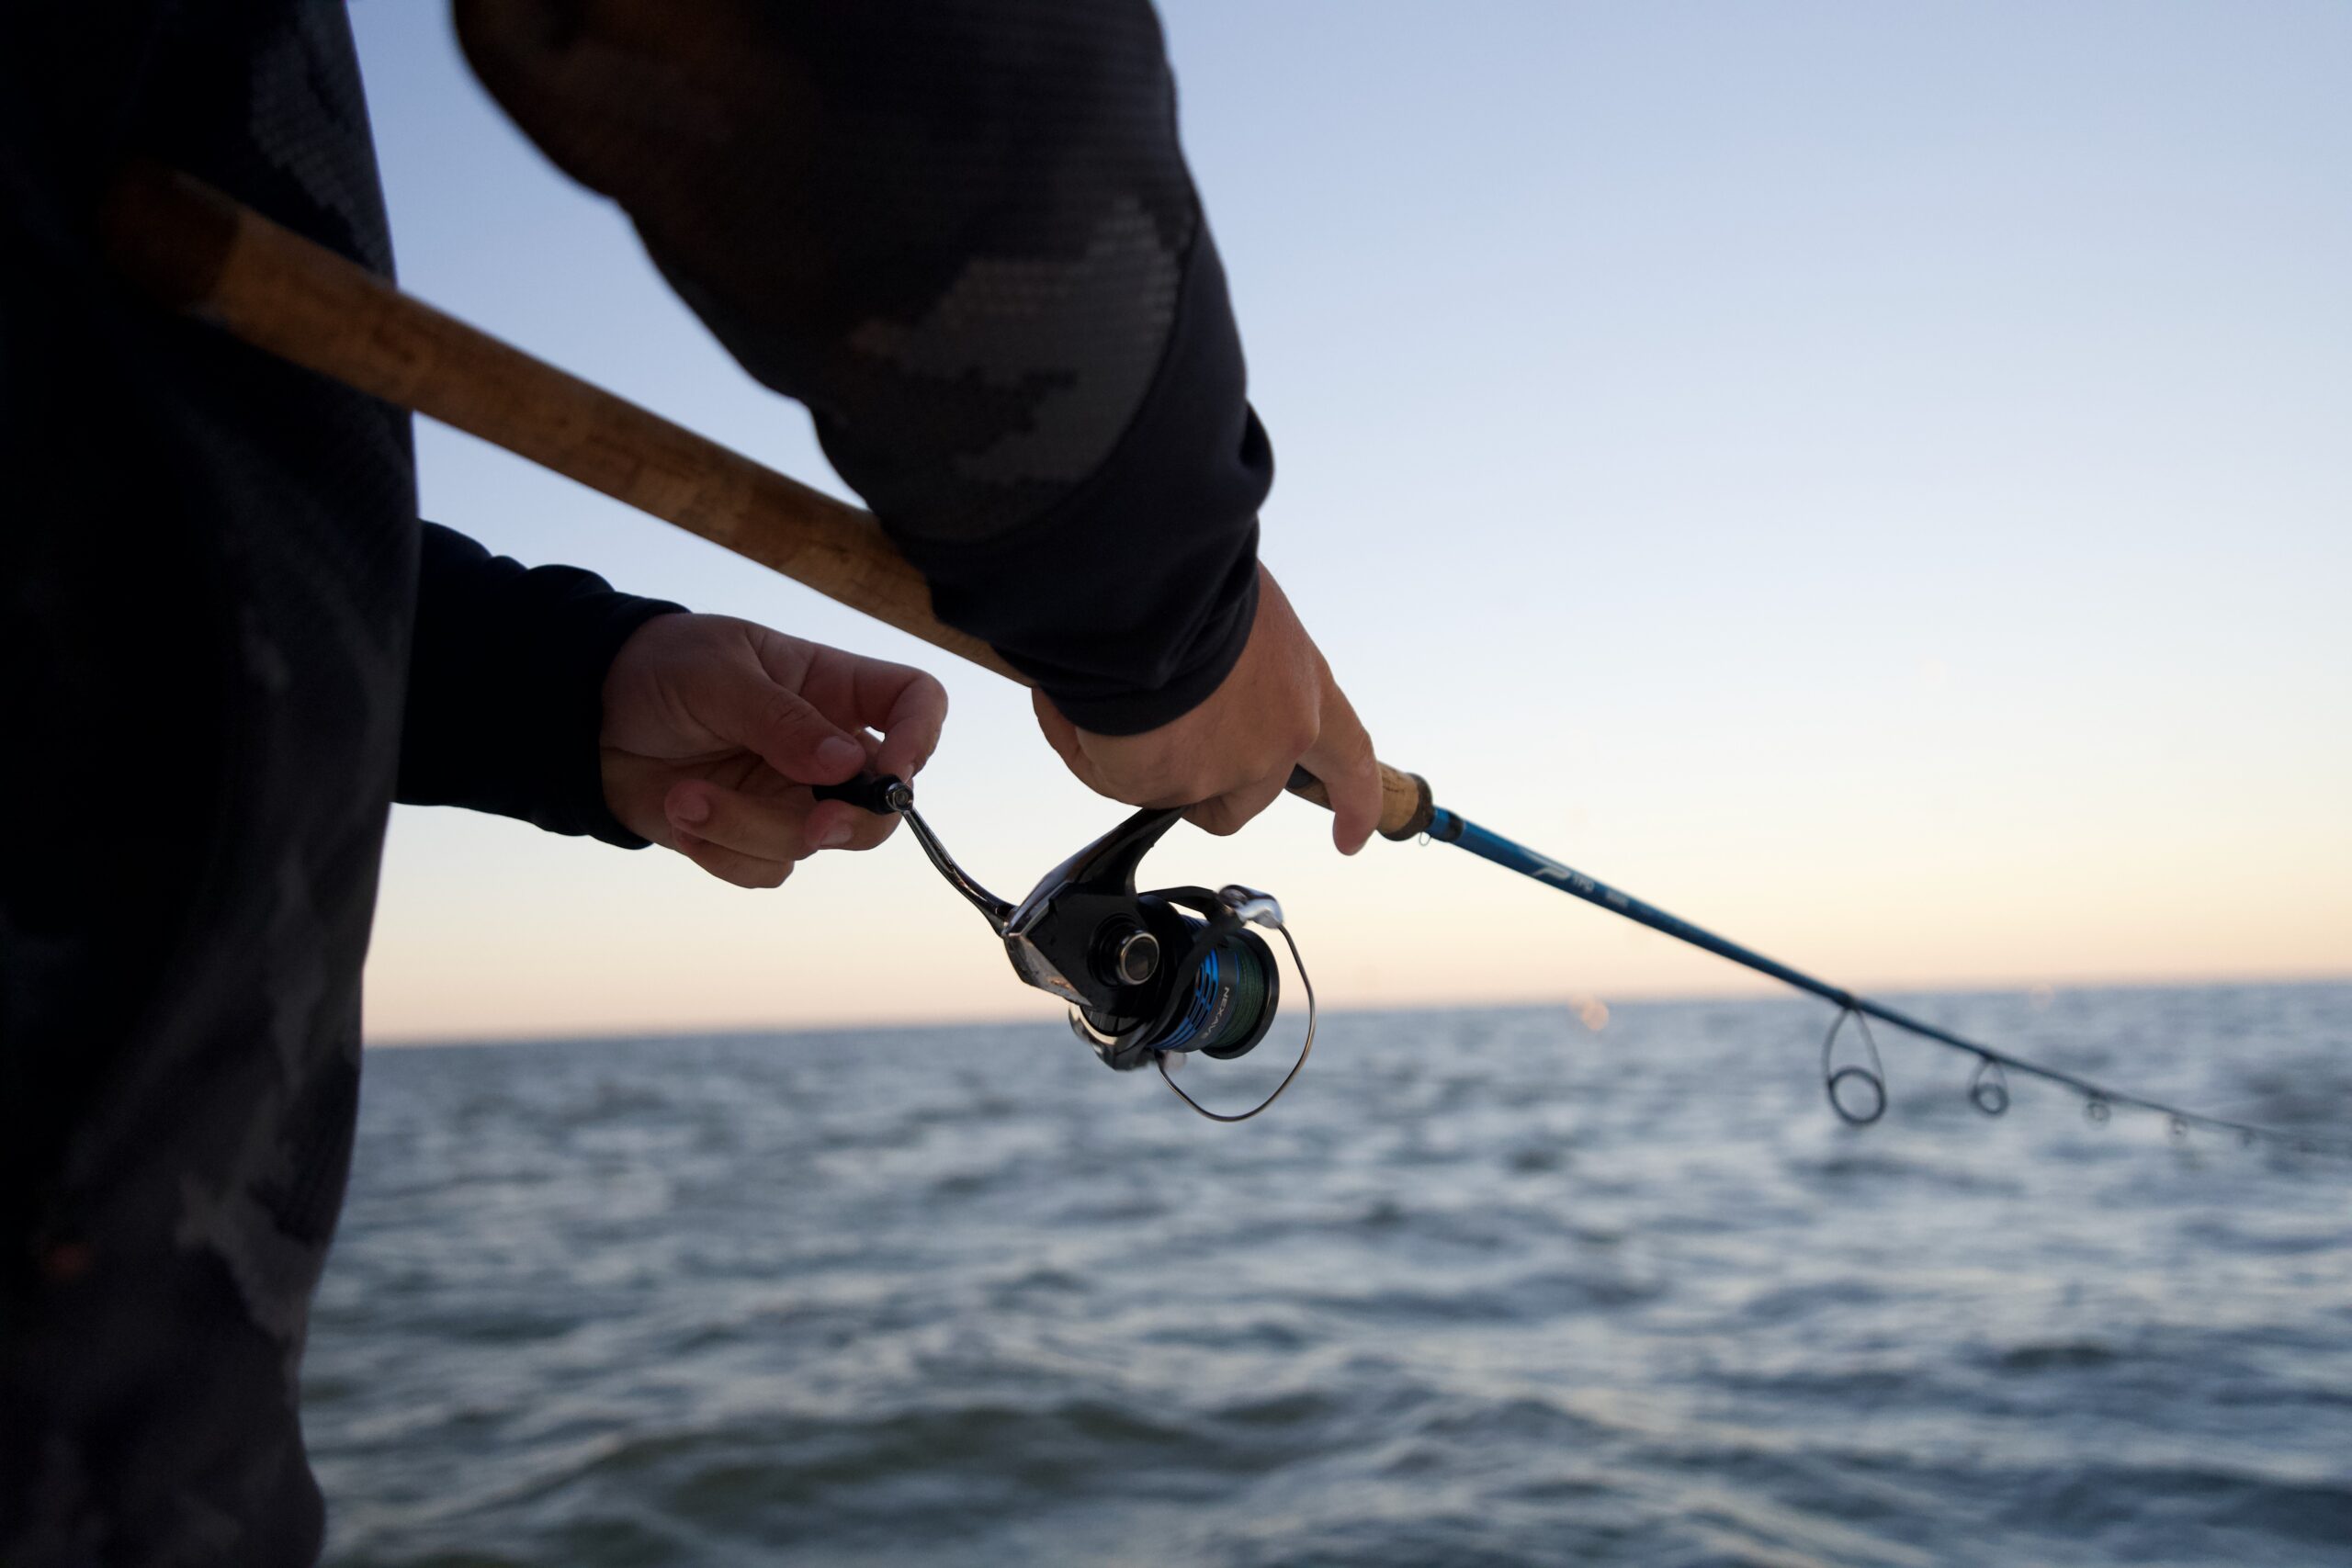 Penn All Species Saltwater Trolling Combo Fishing Rod & Reel